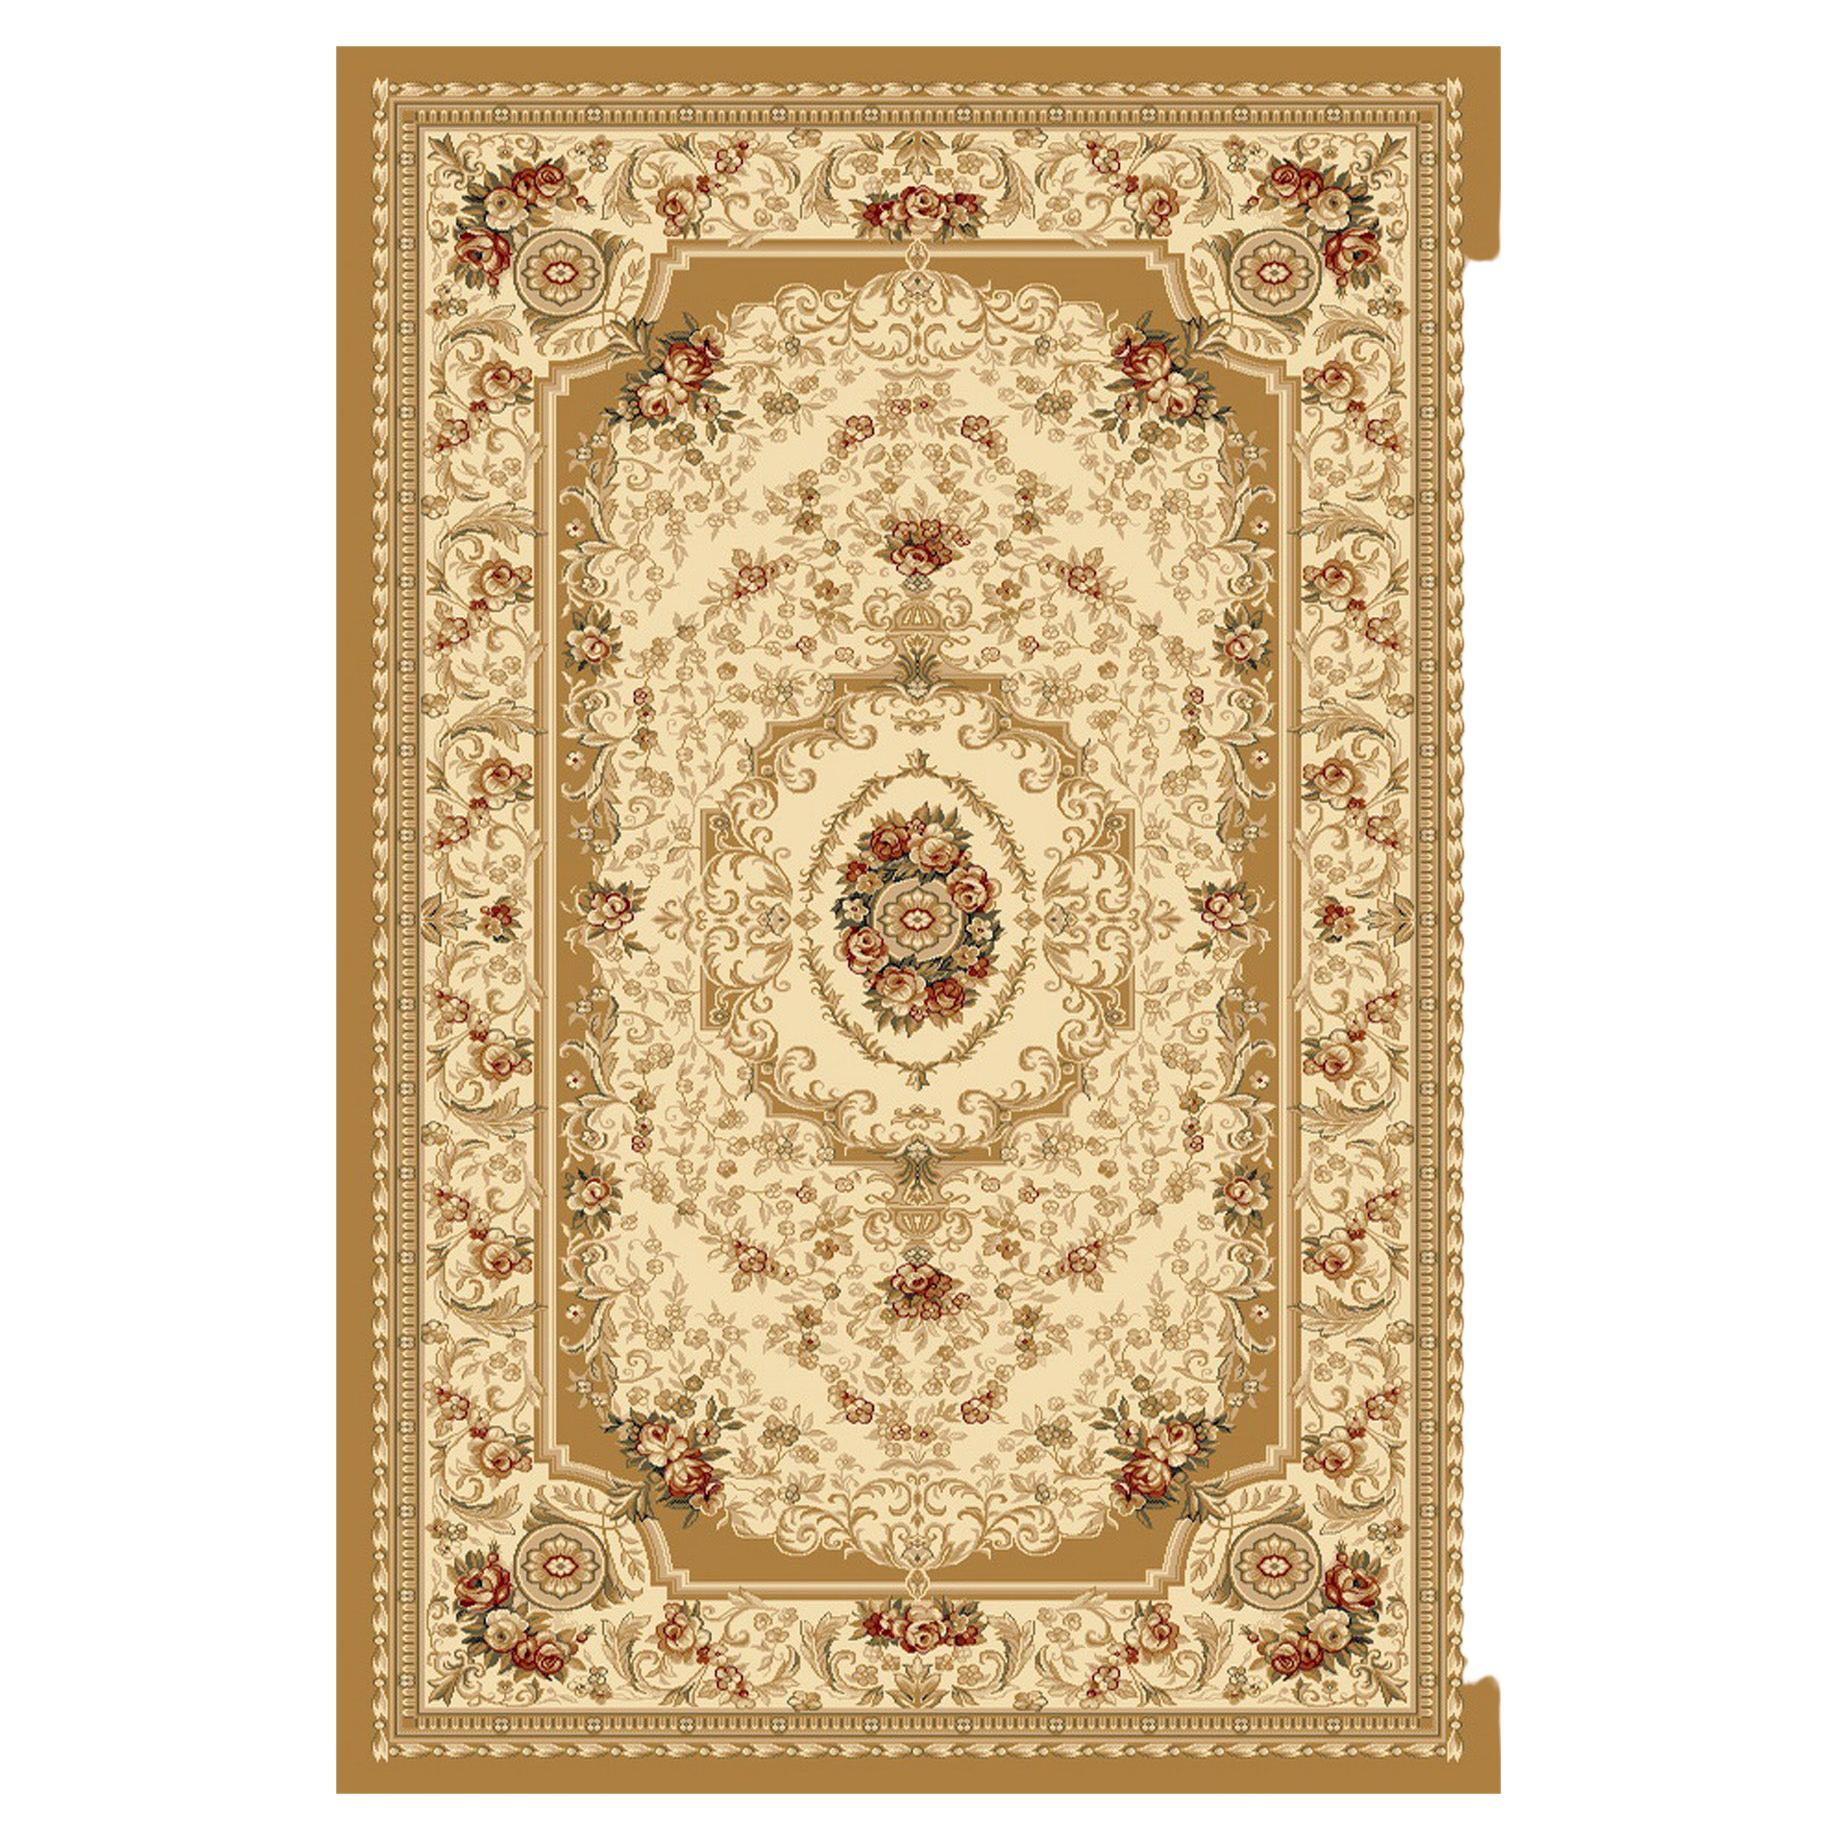 Wunderschöner handgeknüpfter Teppich im persischen Stil, Maßanfertigung von Modenese Gastone Luxury Interiors, die beste Qualität der Fasern garantiert. Kräftige weiße Randstreifen mit Rosenmuster ergeben eine angenehme, hochwertige und weiche